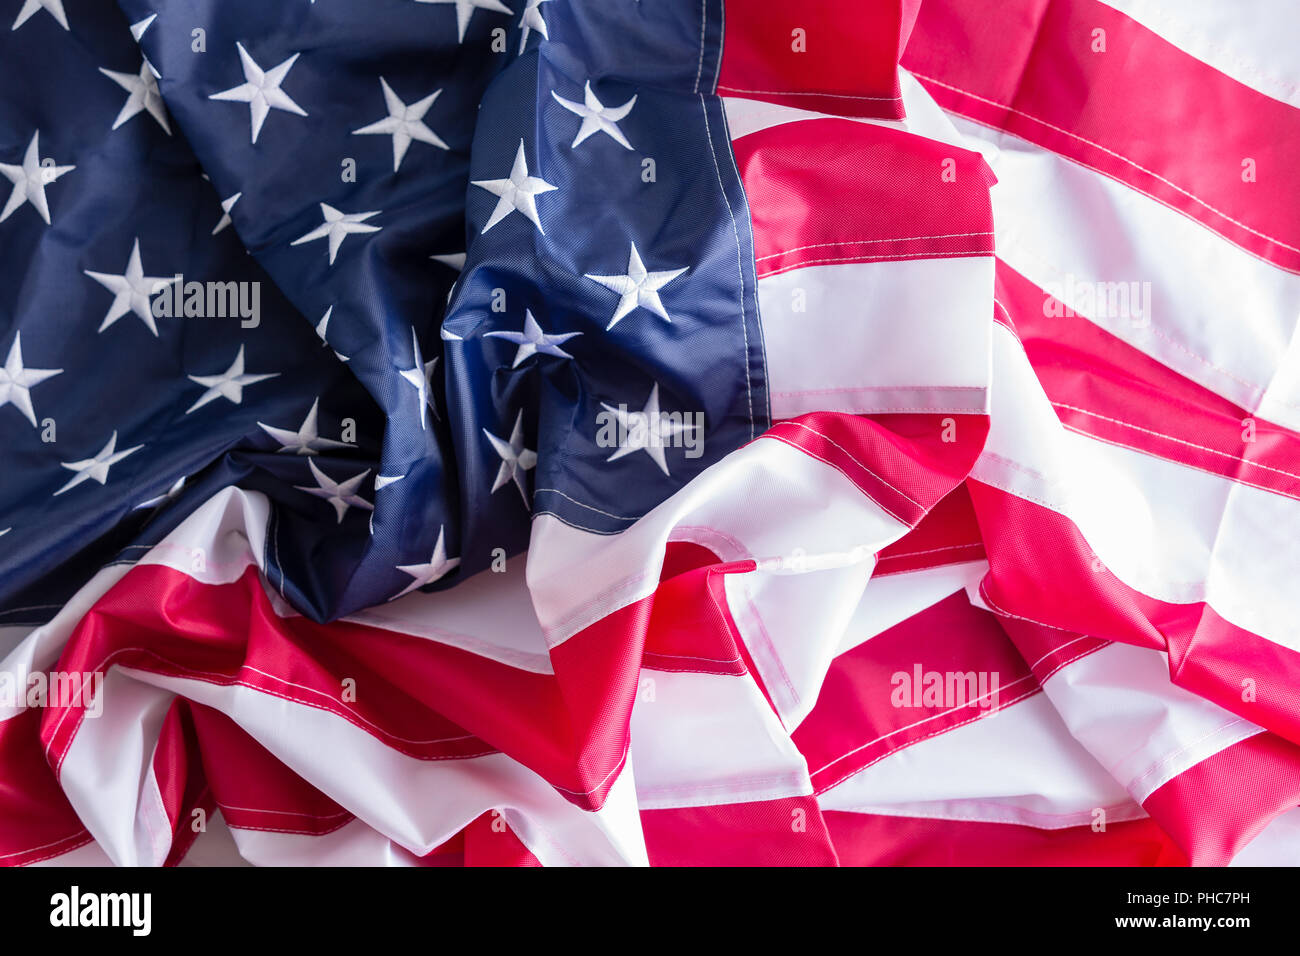 Hintergrund Textur von einem Zerknitterten amerikanische Flagge, die Sterne und Streifen, alte Herrlichkeit, Star-Spangled Banner, für die Vereinigten Staaten oder Independence Day Themen Stockfoto